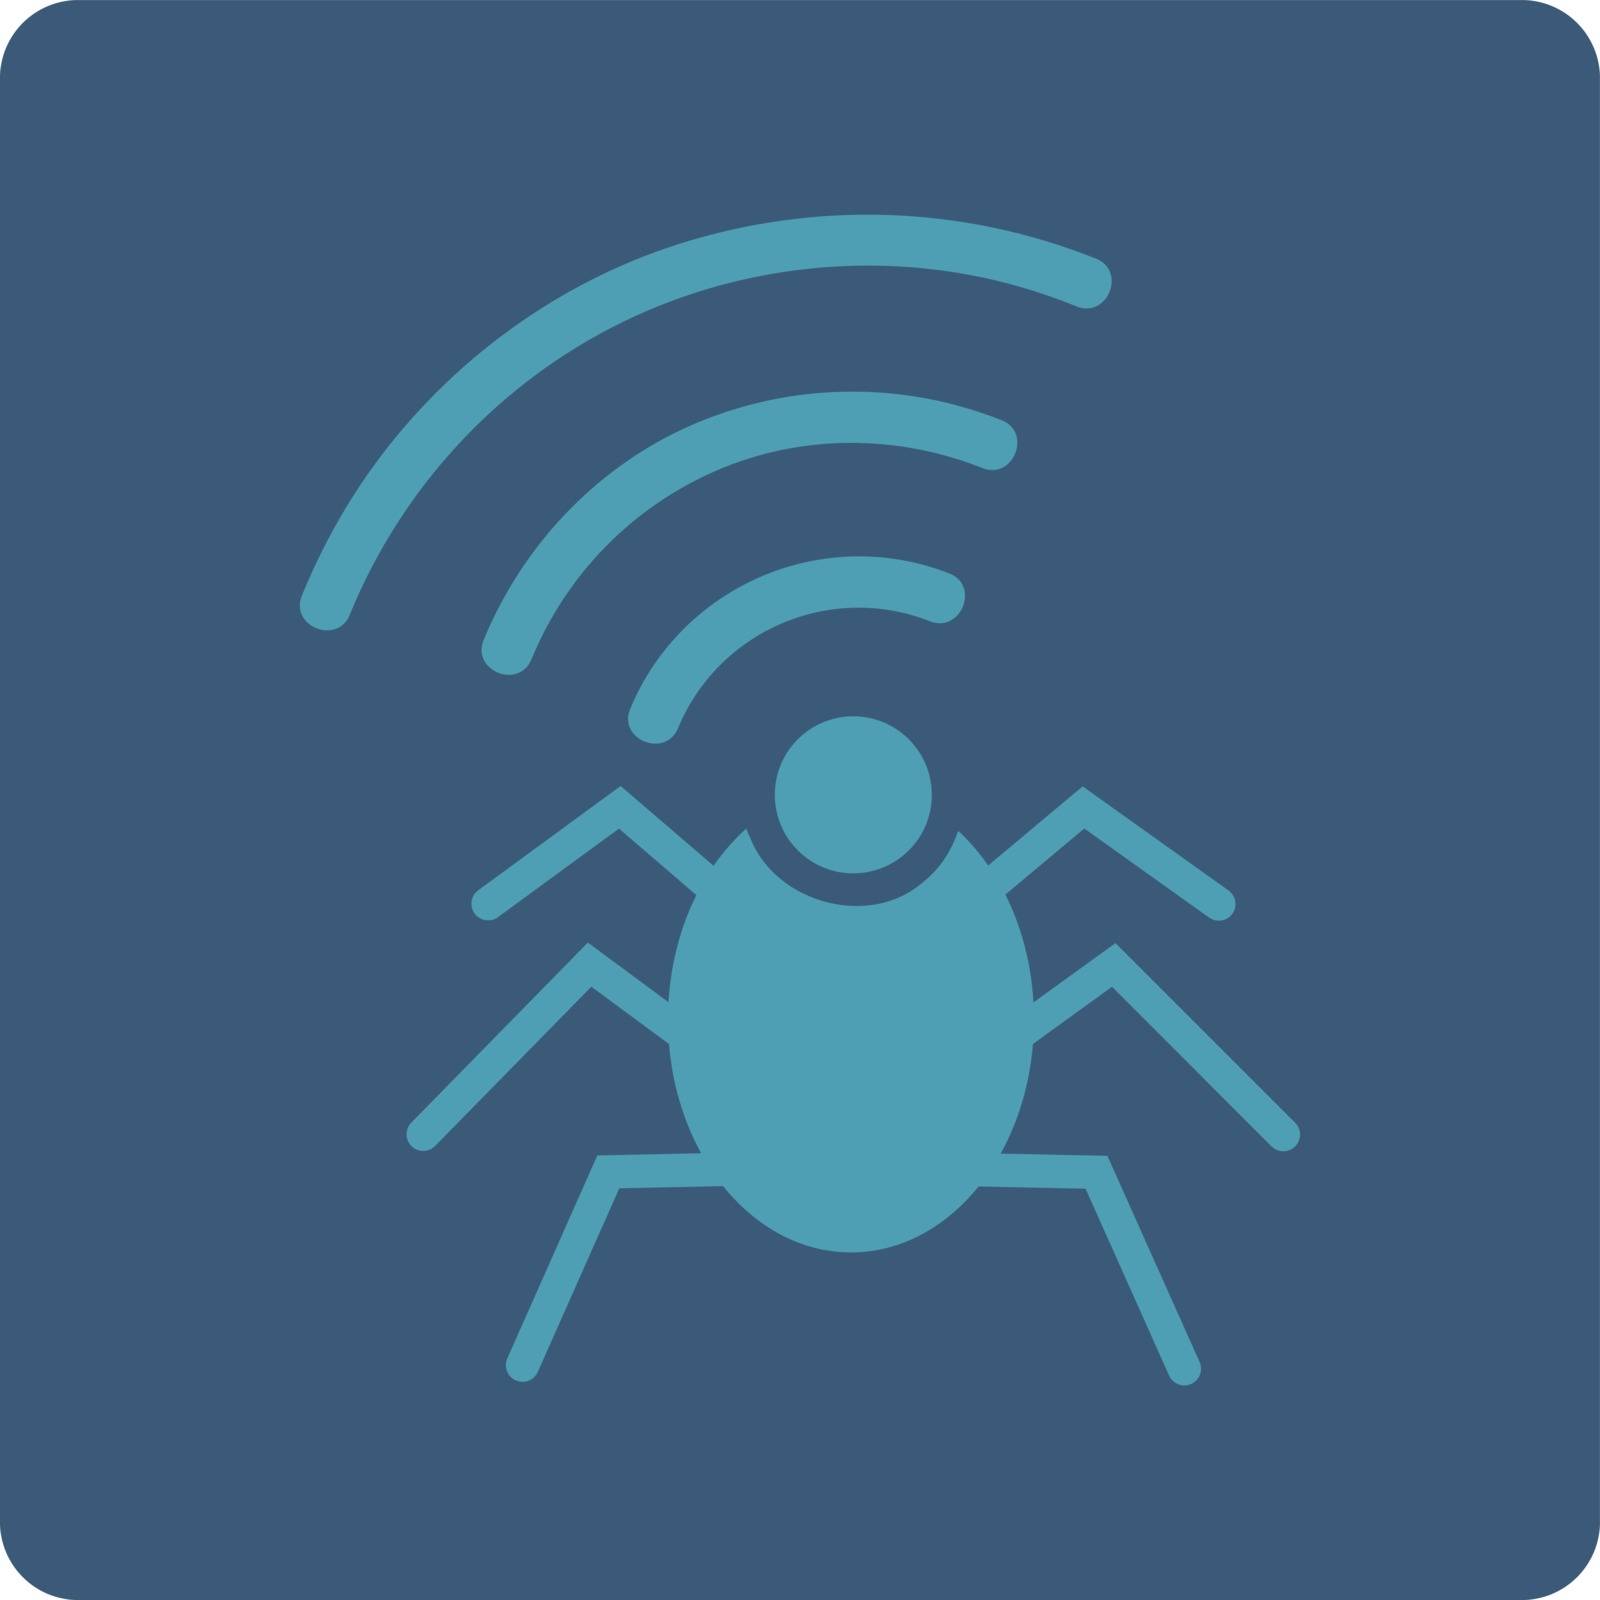 Radio spy bug icon by ahasoft